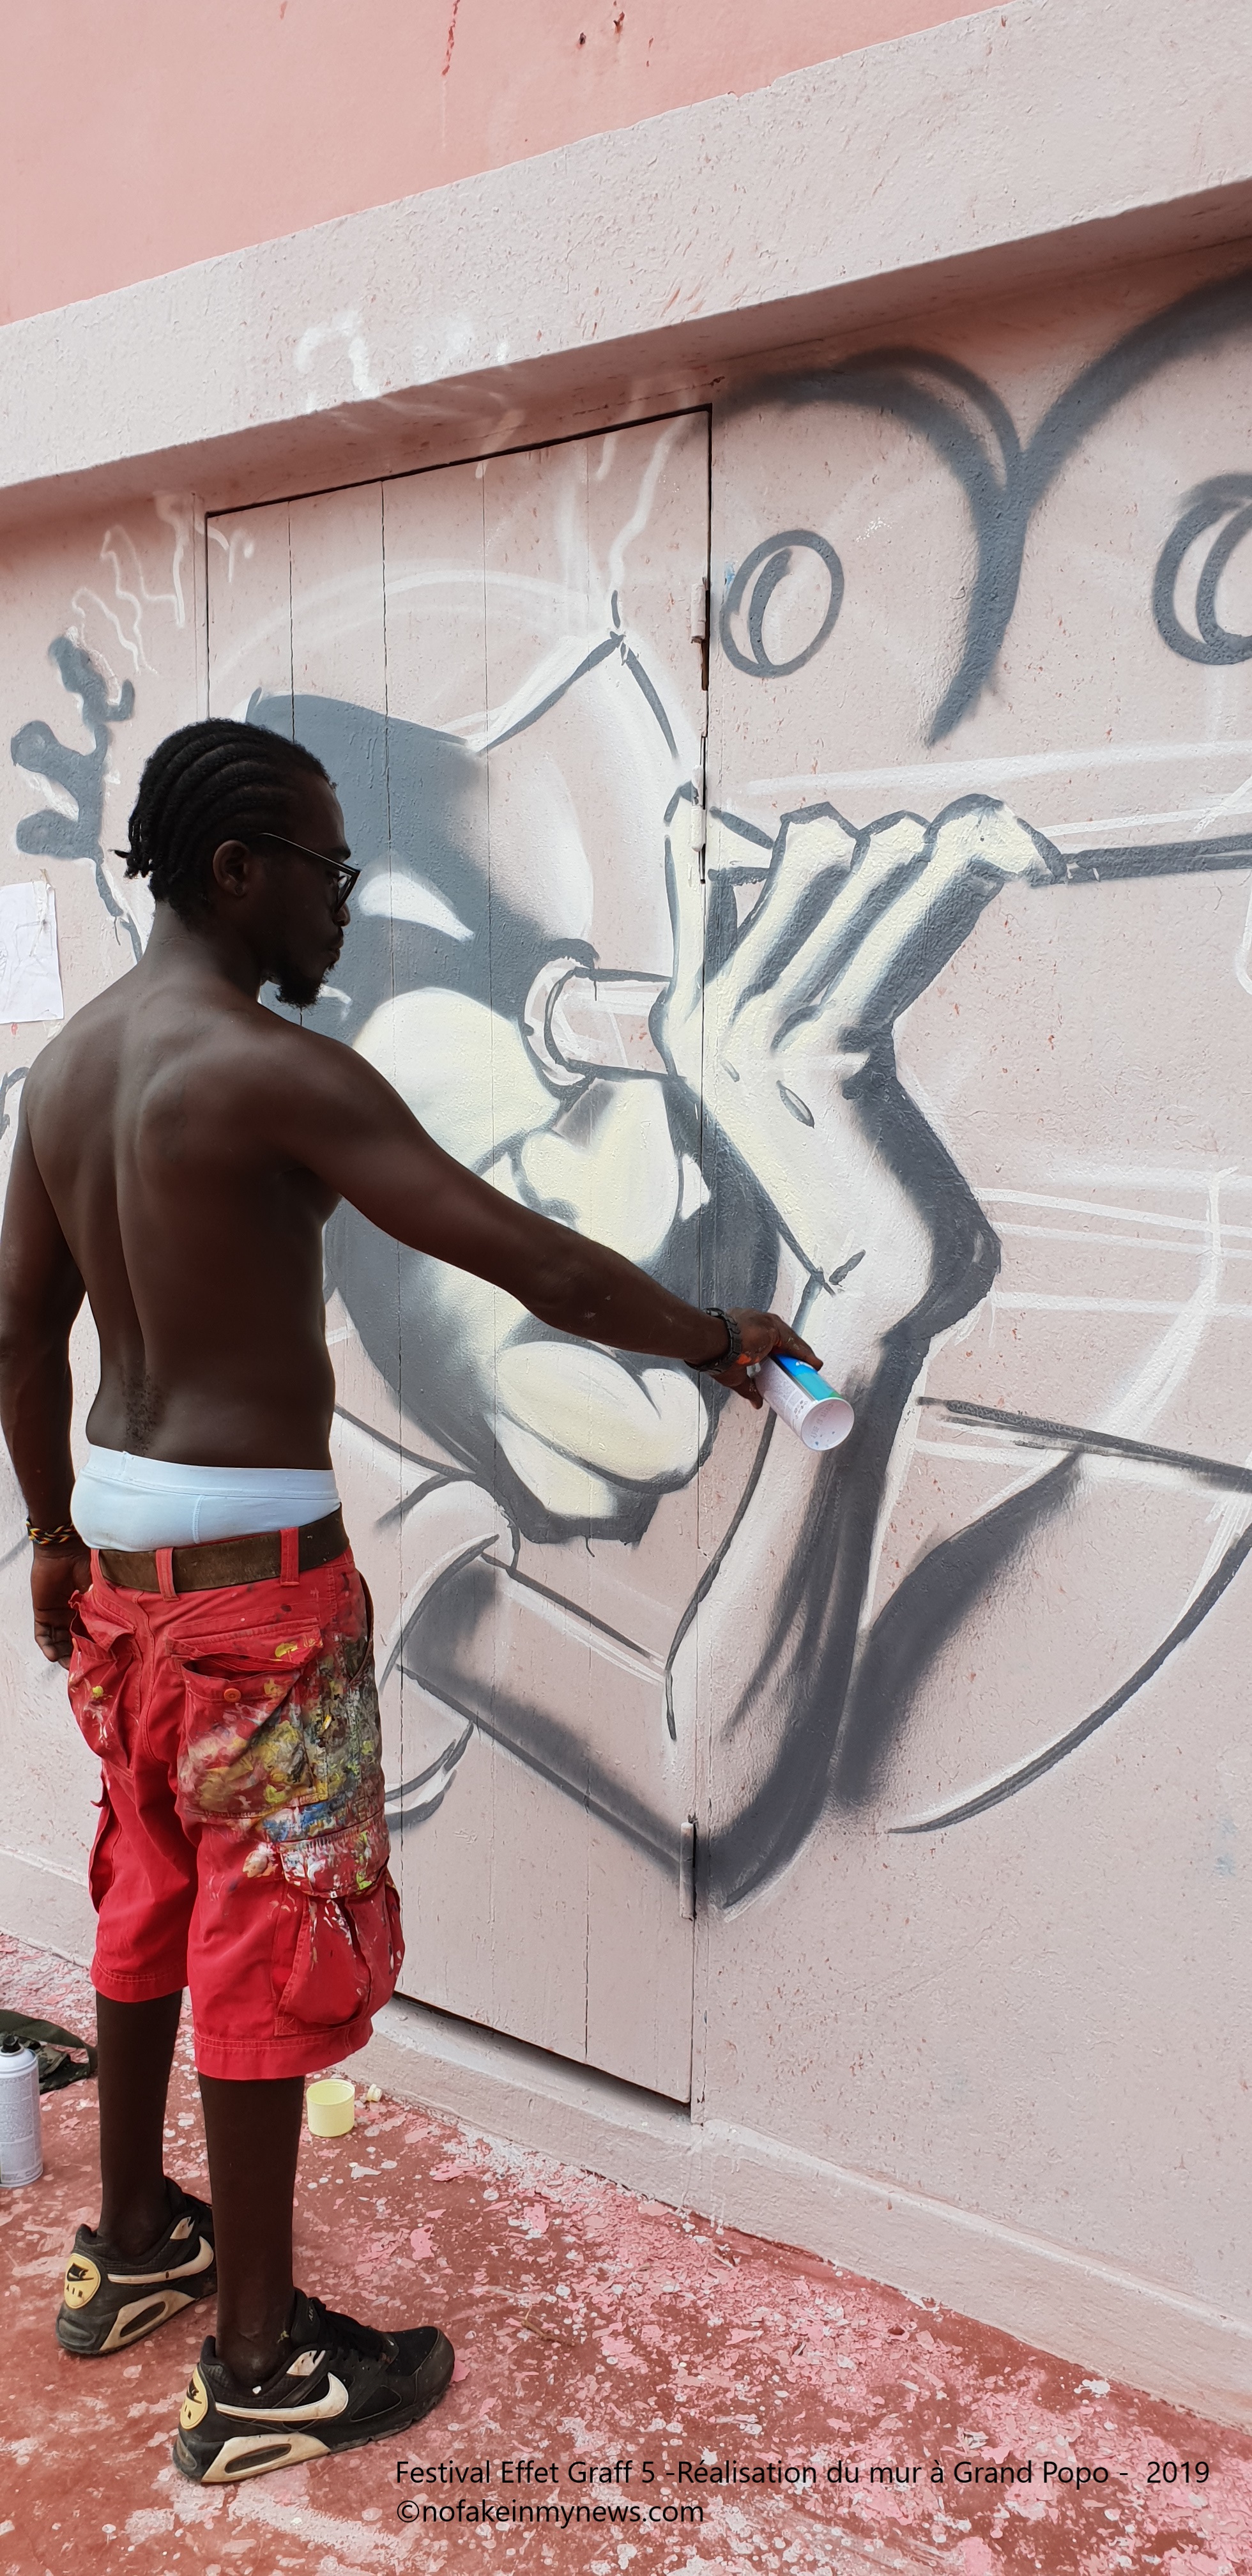 Festival Effet Graff 5 -Réalisation du mur à Grand Popo - 2019 - ©nofakeinmynews